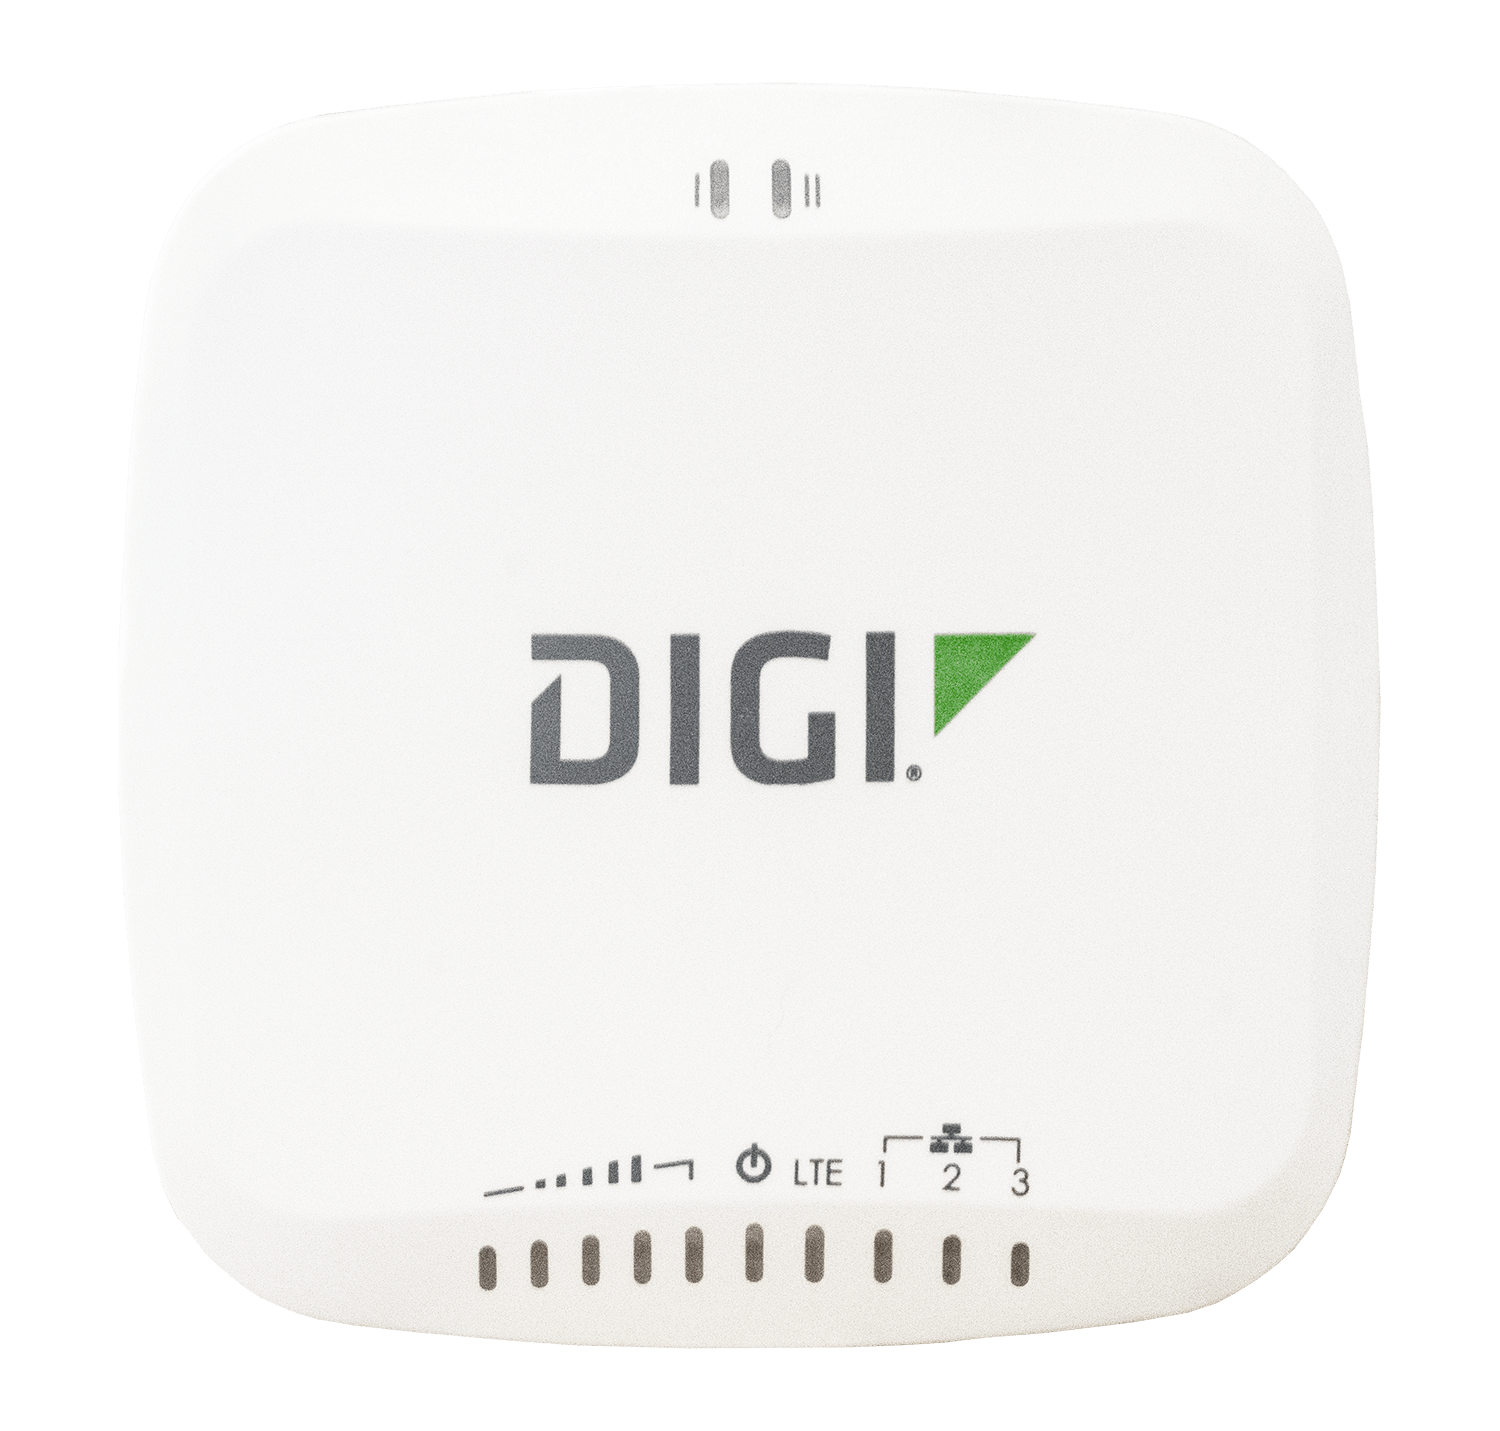 ASB-6335-MX04-OUS - Digi 6335-MX04 LTE router; 3 port GigE; 1 USB 